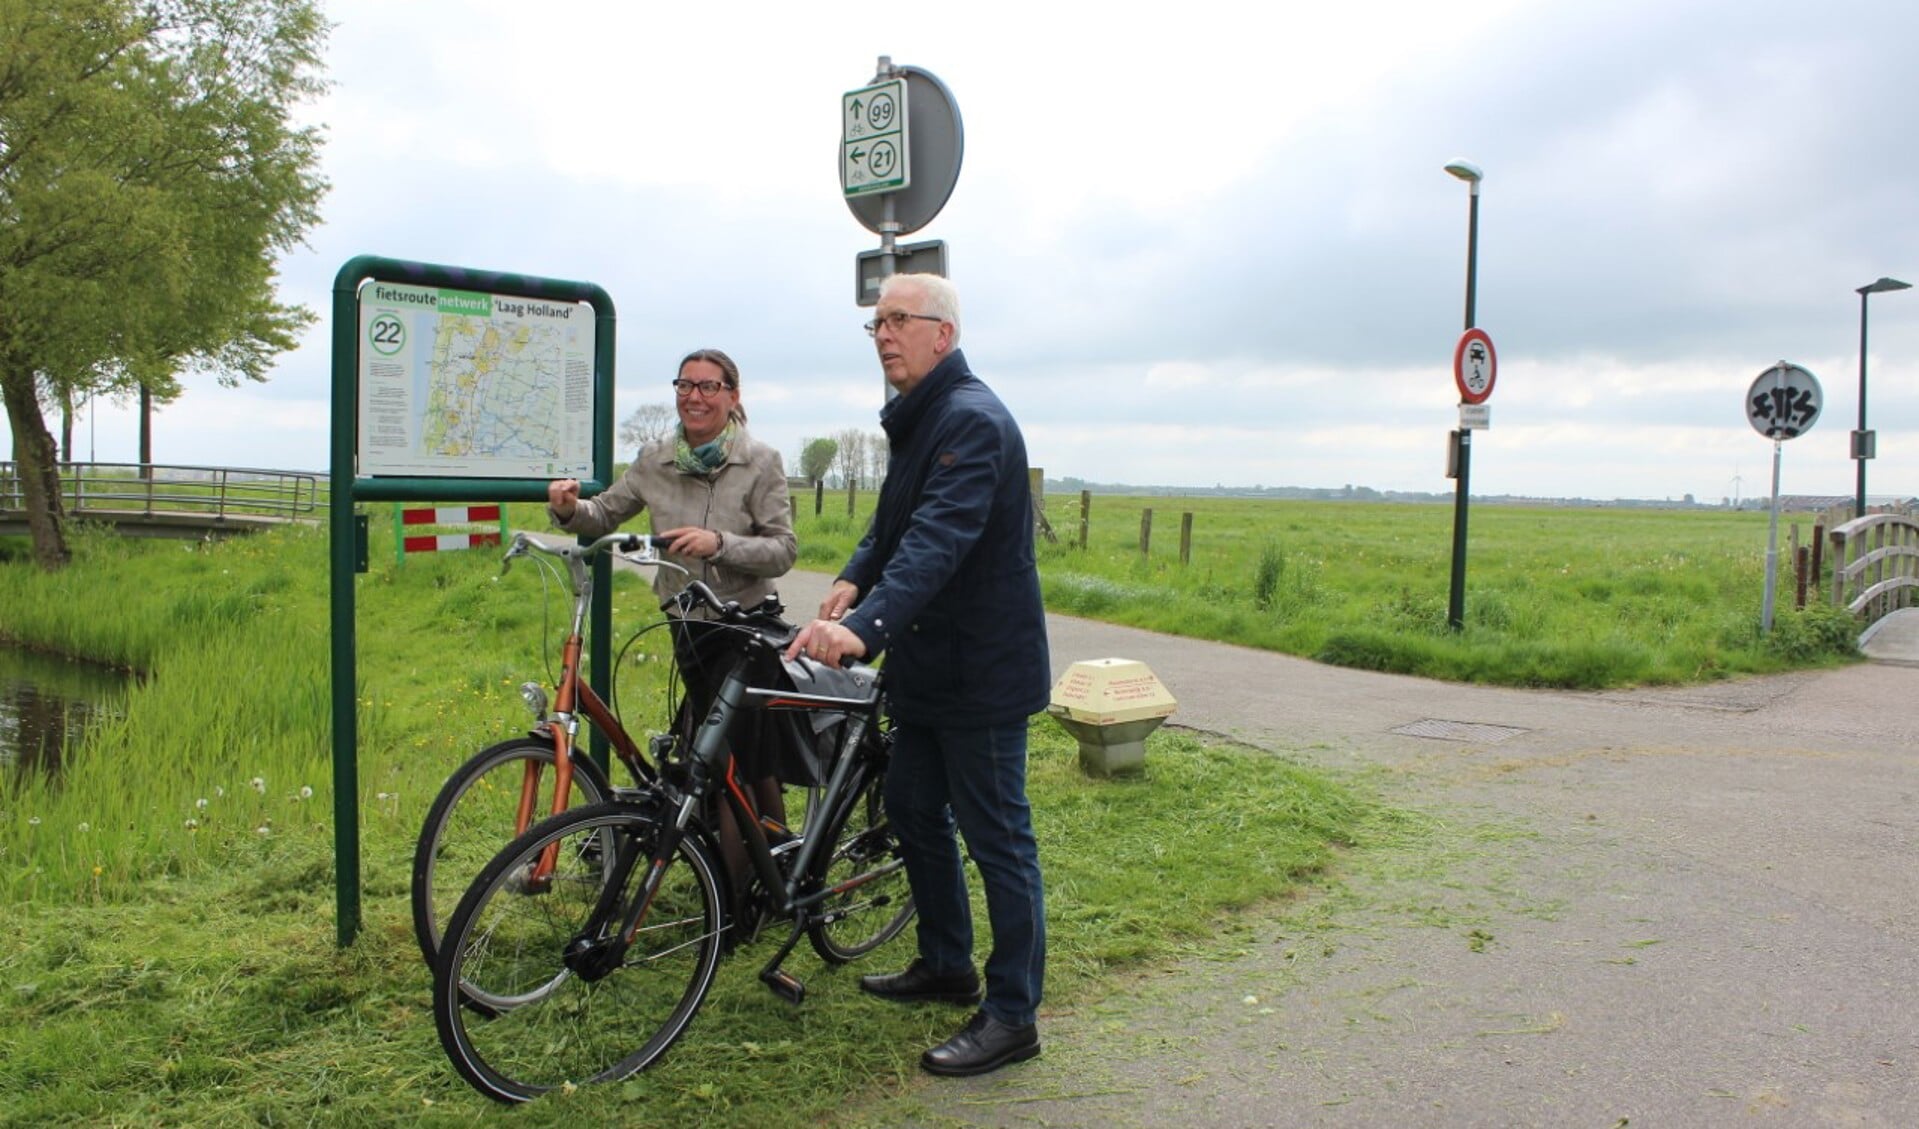 De wethouders De Vink (links) en Rood staan even stil op de hoek Heemstederweg / Uitgeesterweg bij een van de knooppunten van het Fietsroutenetwerk dat ook door Castricum en Uitgeest voert.